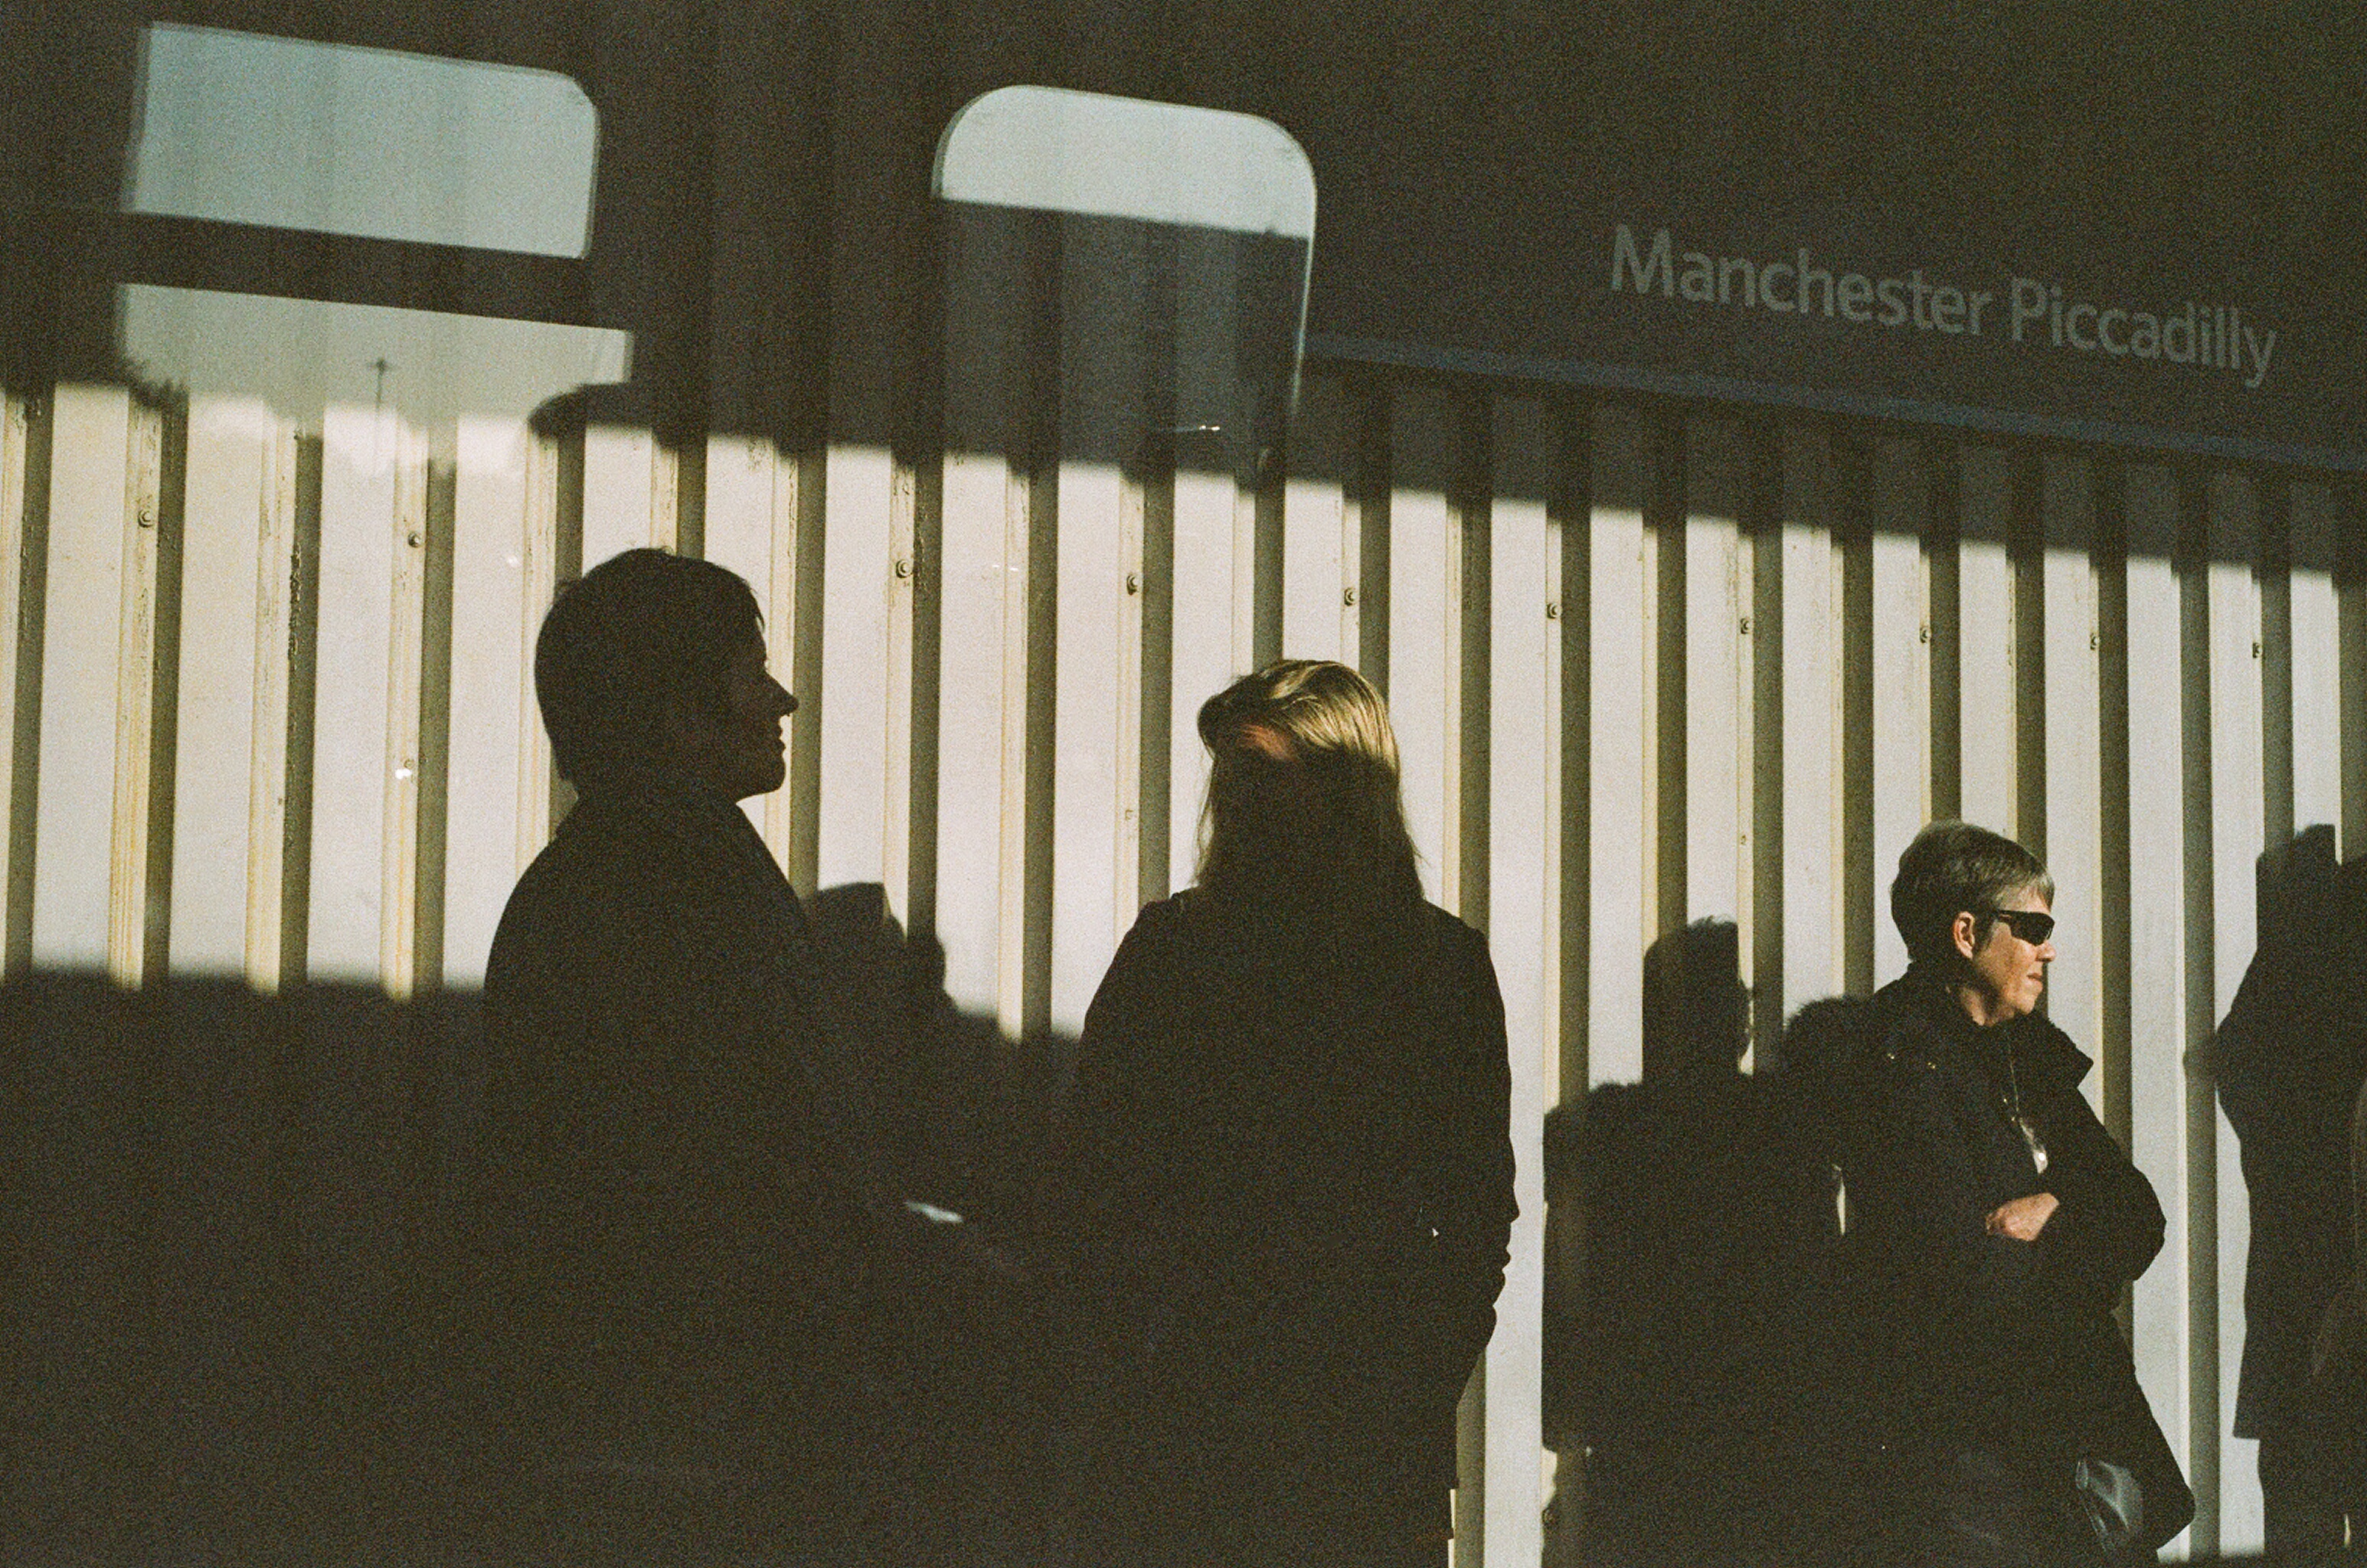 Ihmisiä seisoo seinän edessä. Osa ihmisistä jää varjoon, osa on auringossa. Ylhäällä lukee Manchester Piccadilly.